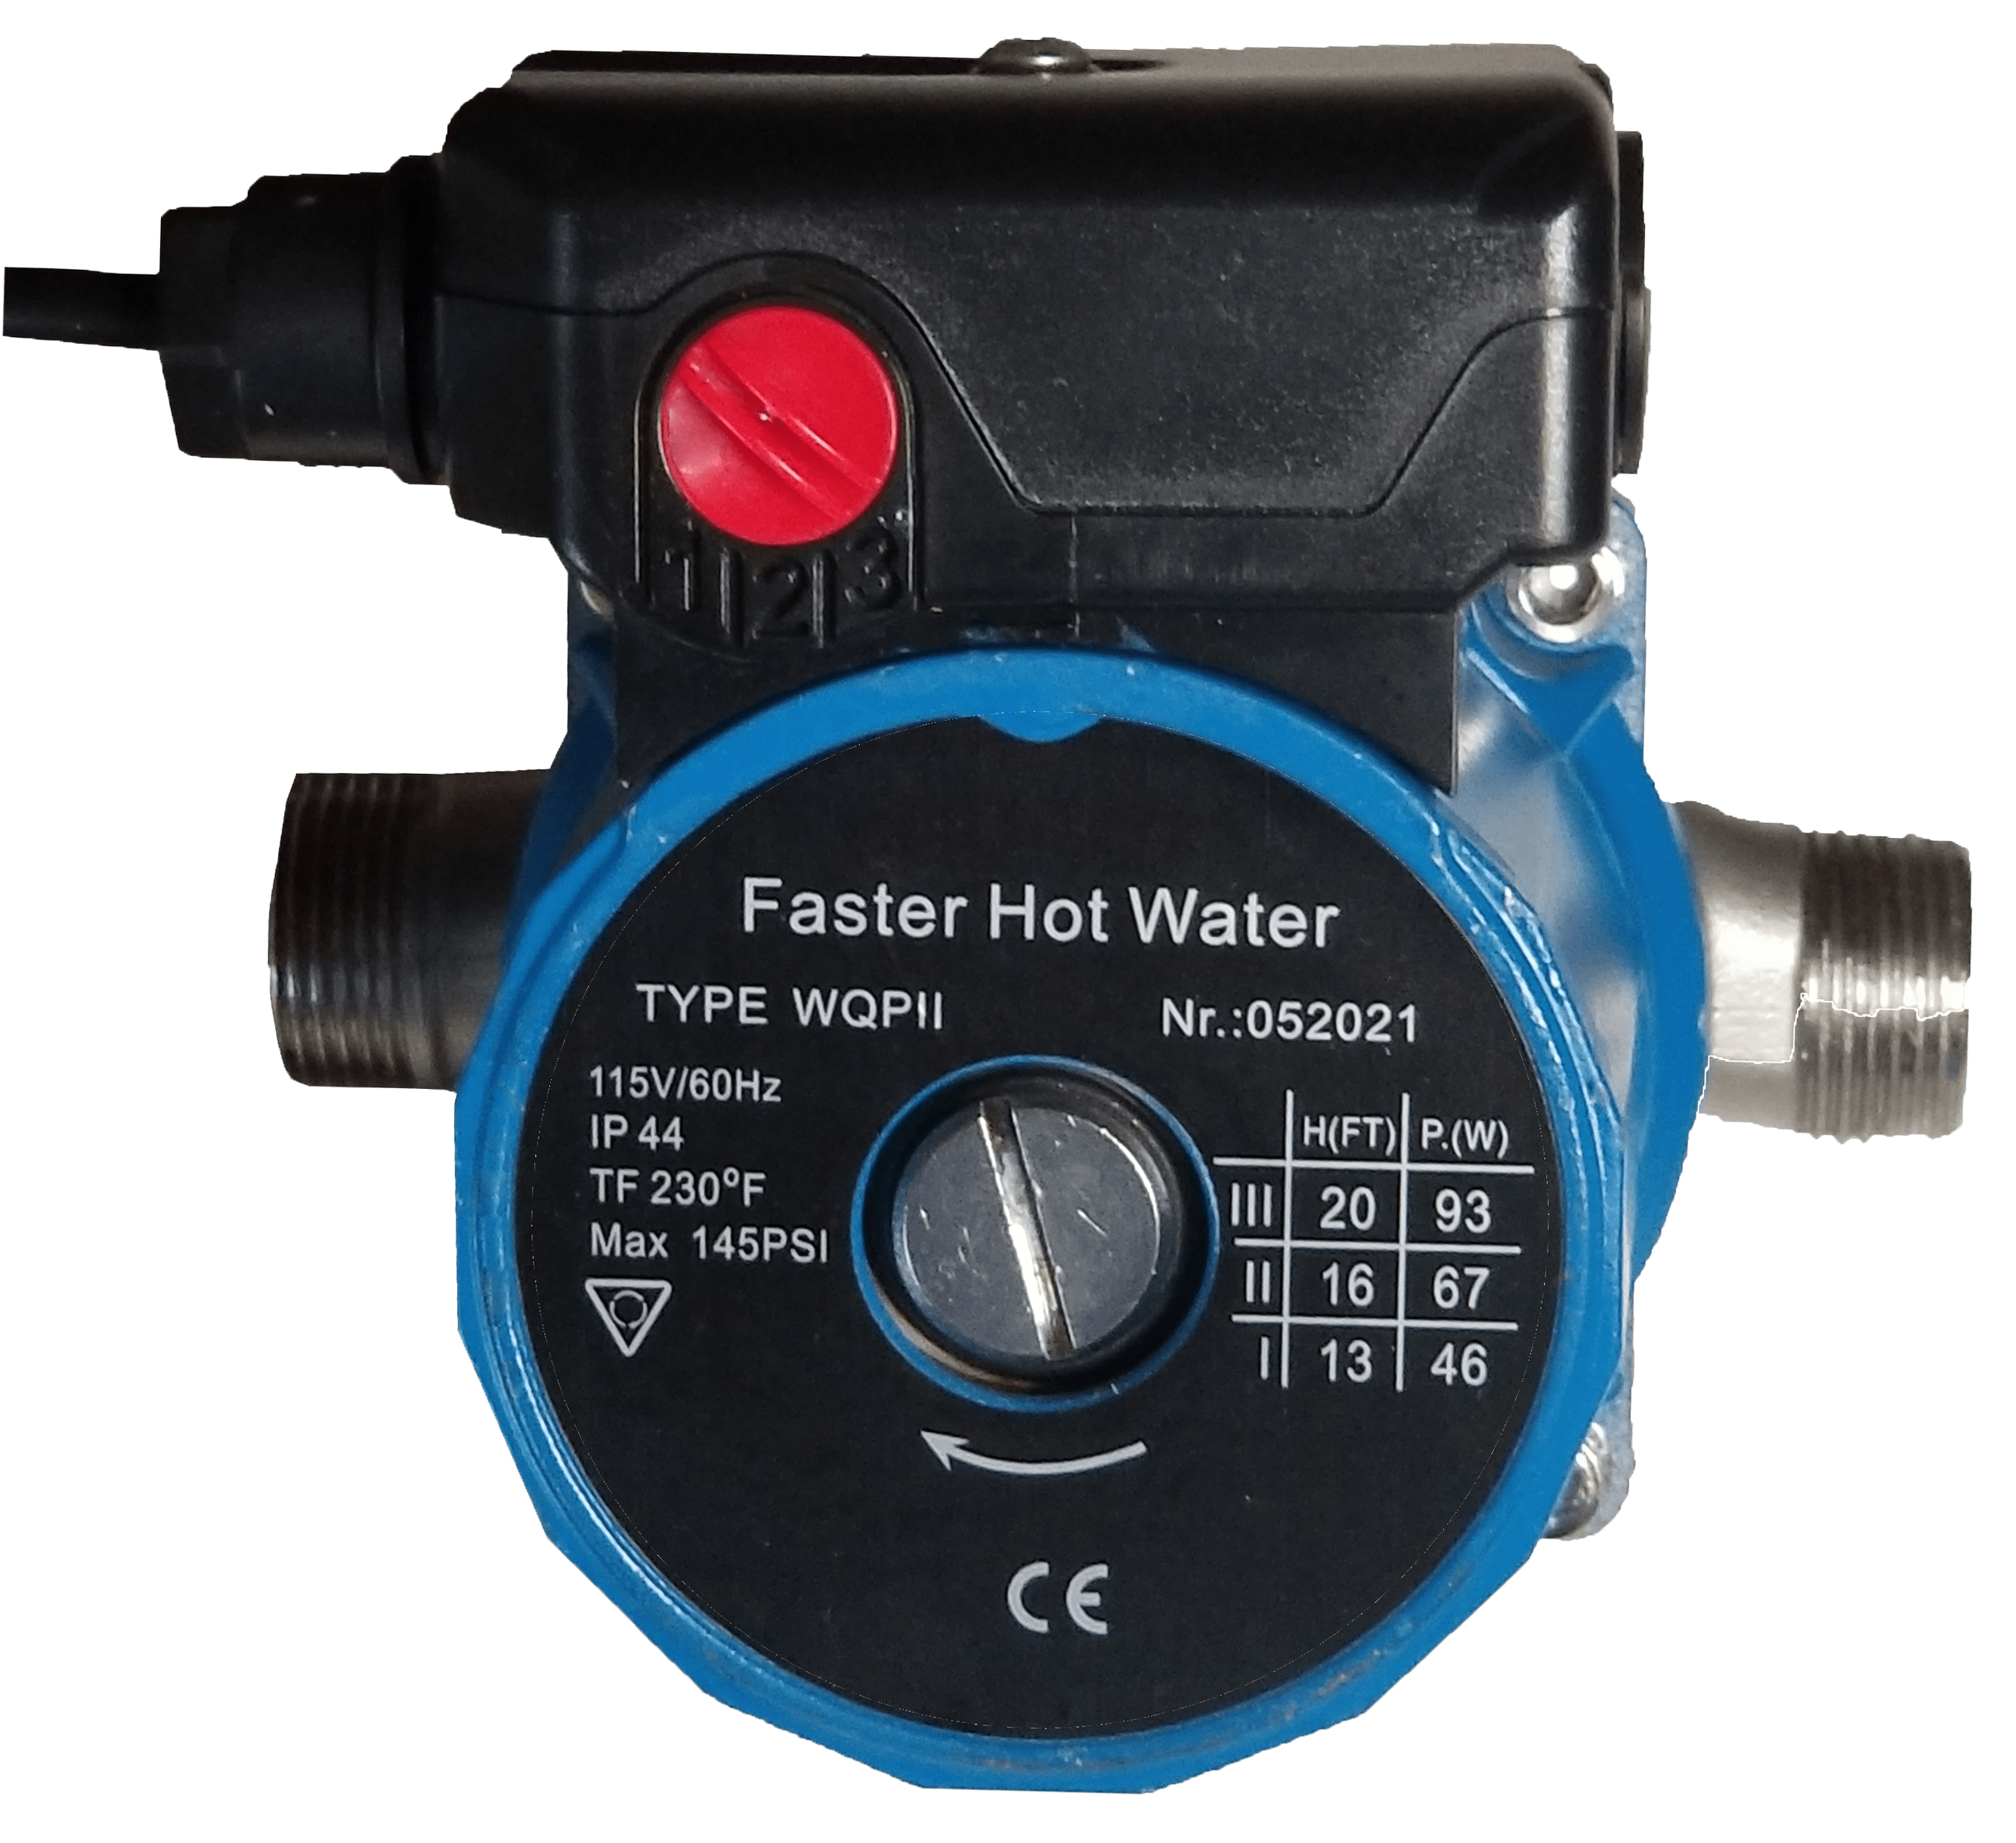 Hot water circ pump image